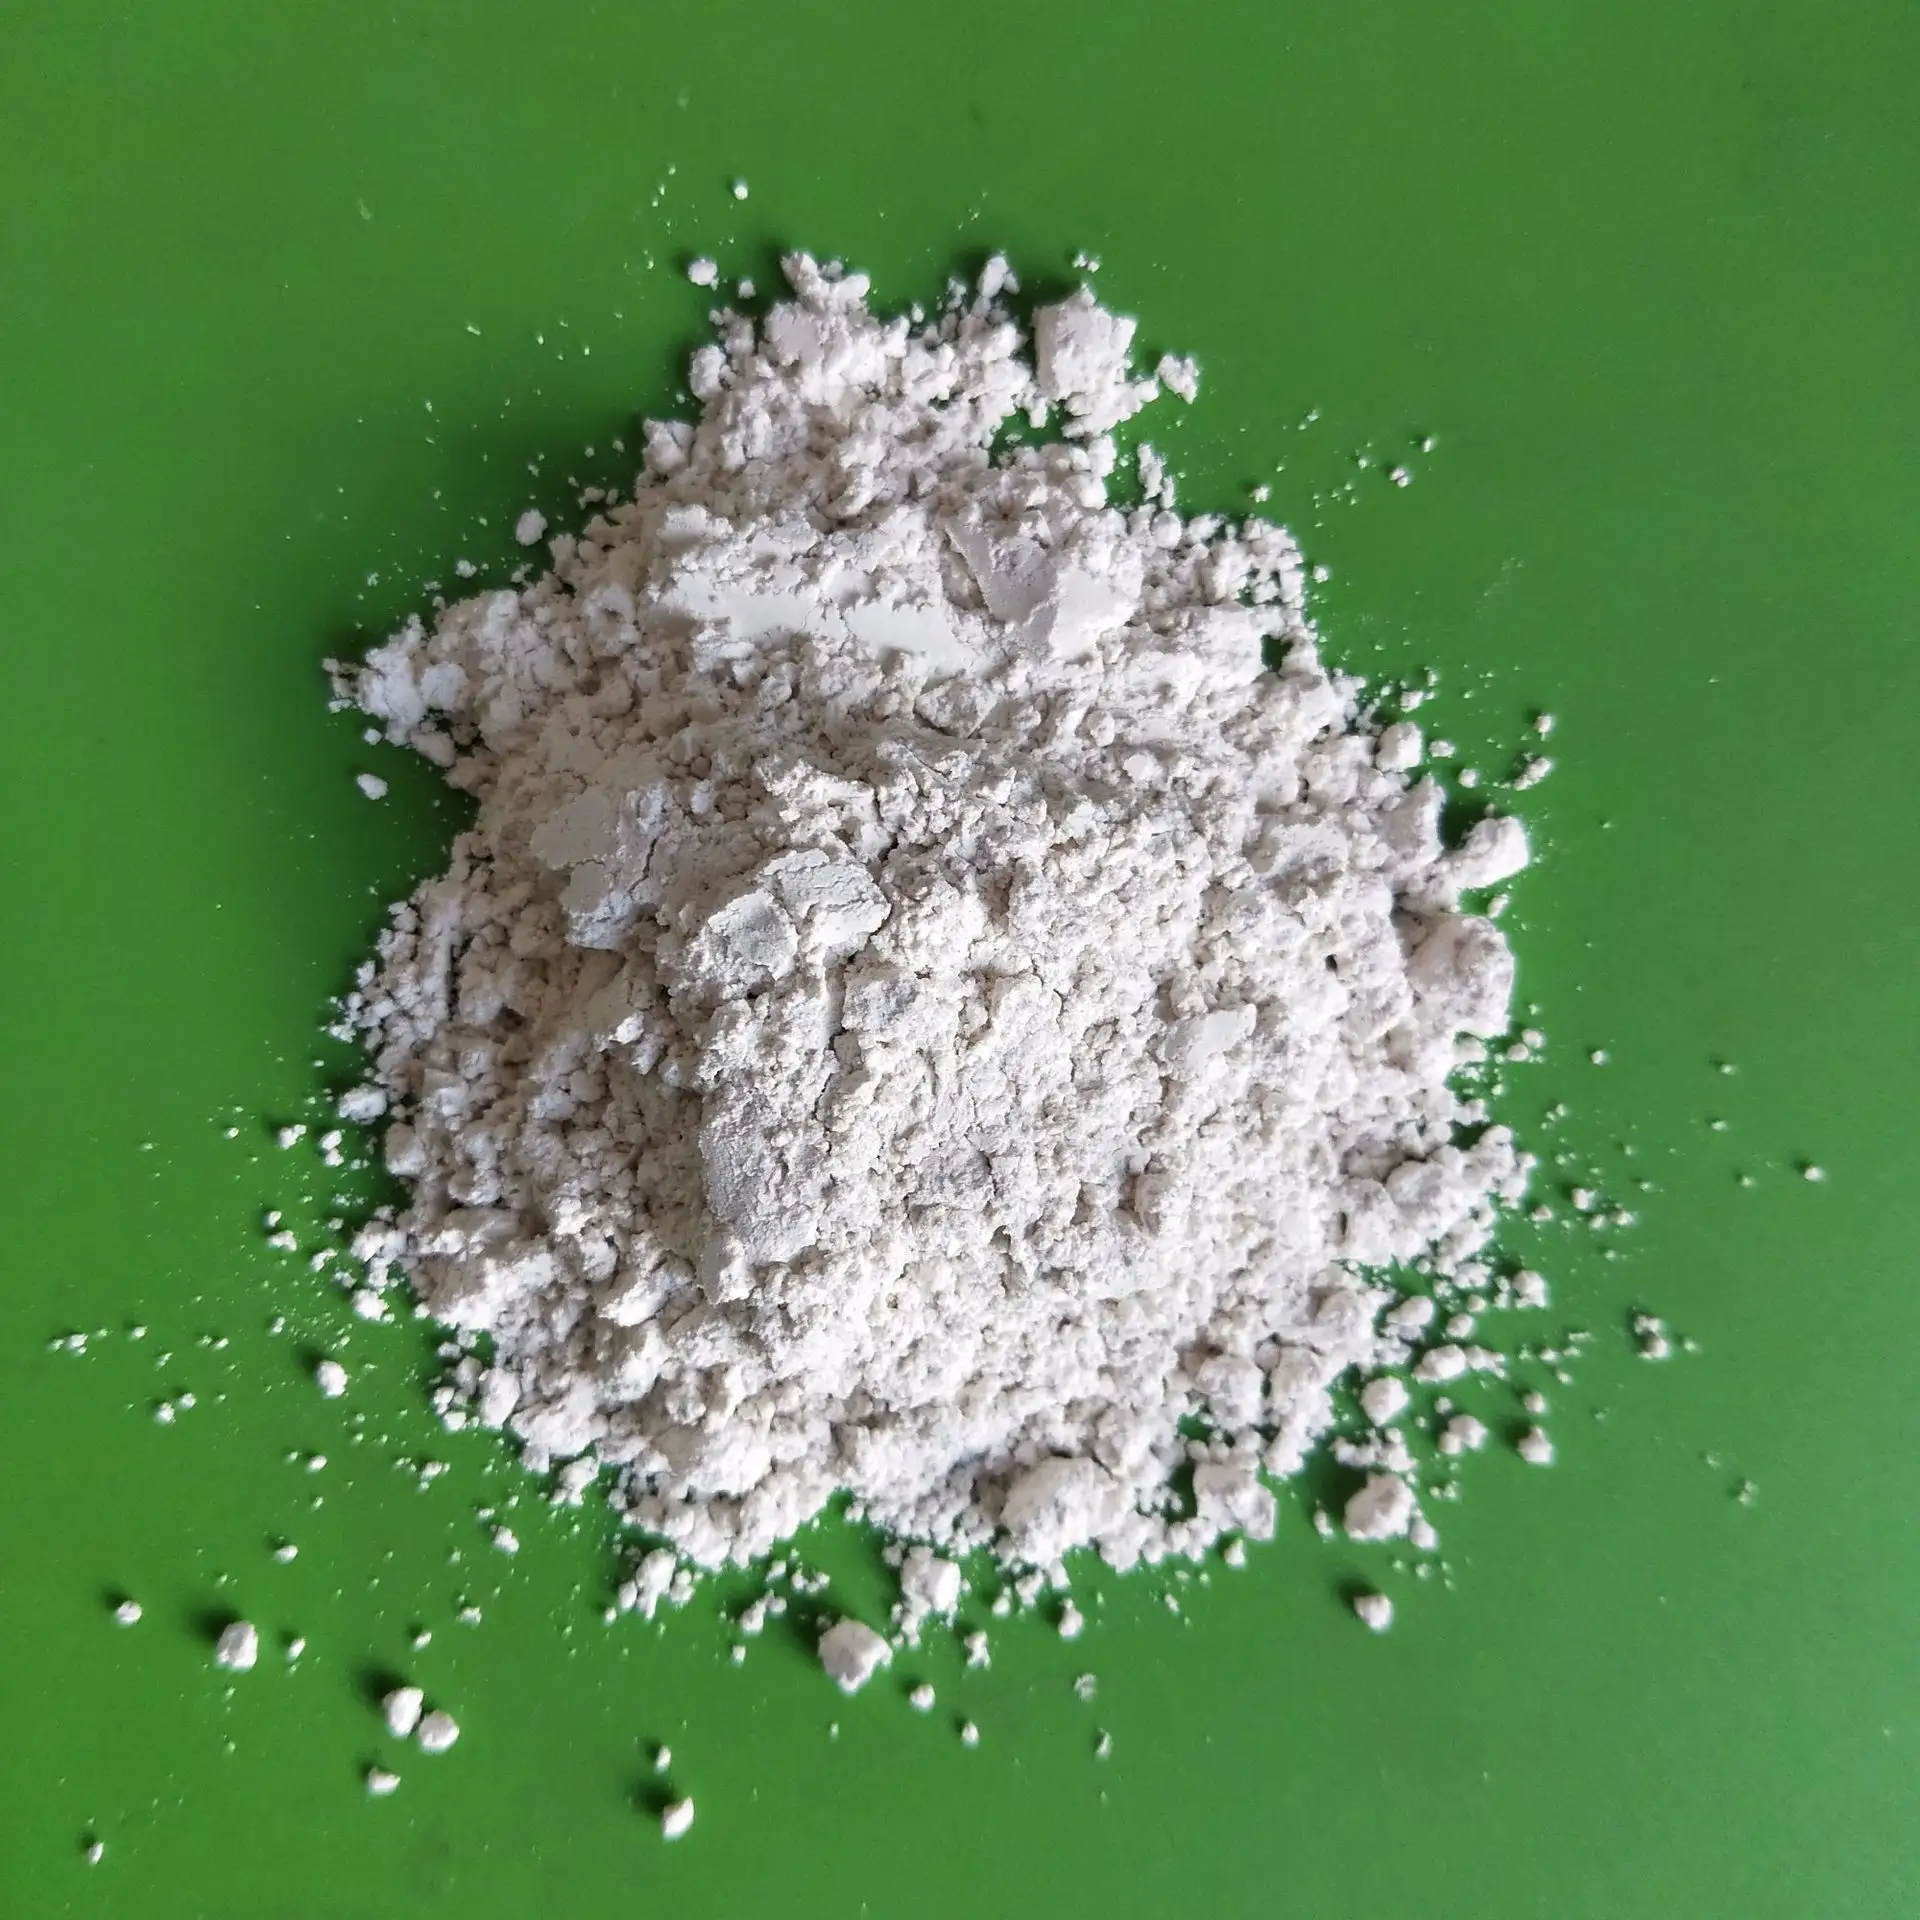 Hohe Qualität Gute Preise Weiß pulver pigment Tio2 Titandioxid Rutil zum Malen